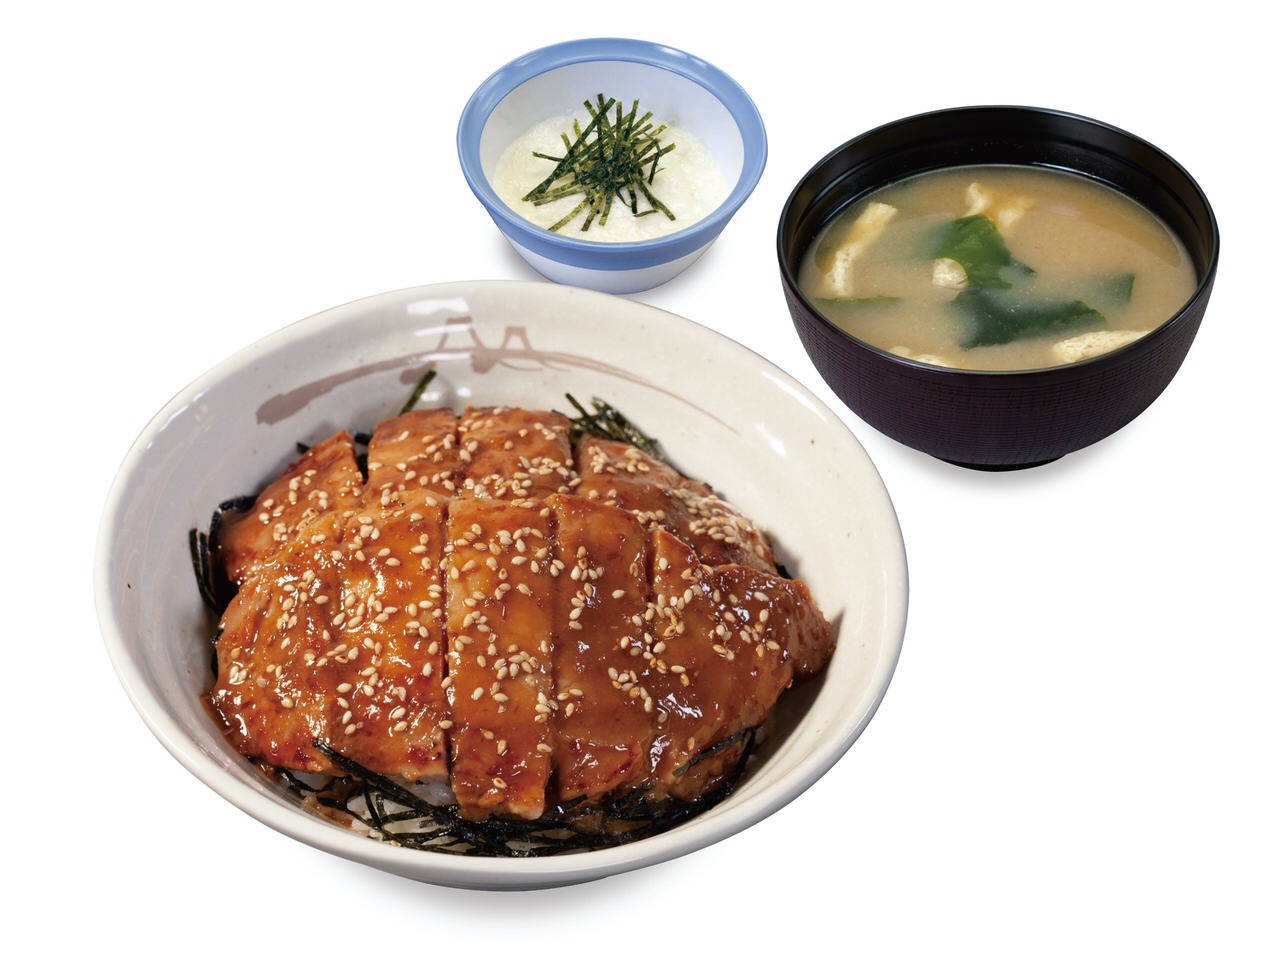 【松屋】特製味噌ダレに漬け込んだ豚ロース2枚のせ「味噌漬けトンテキ丼」9月8日より発売開始